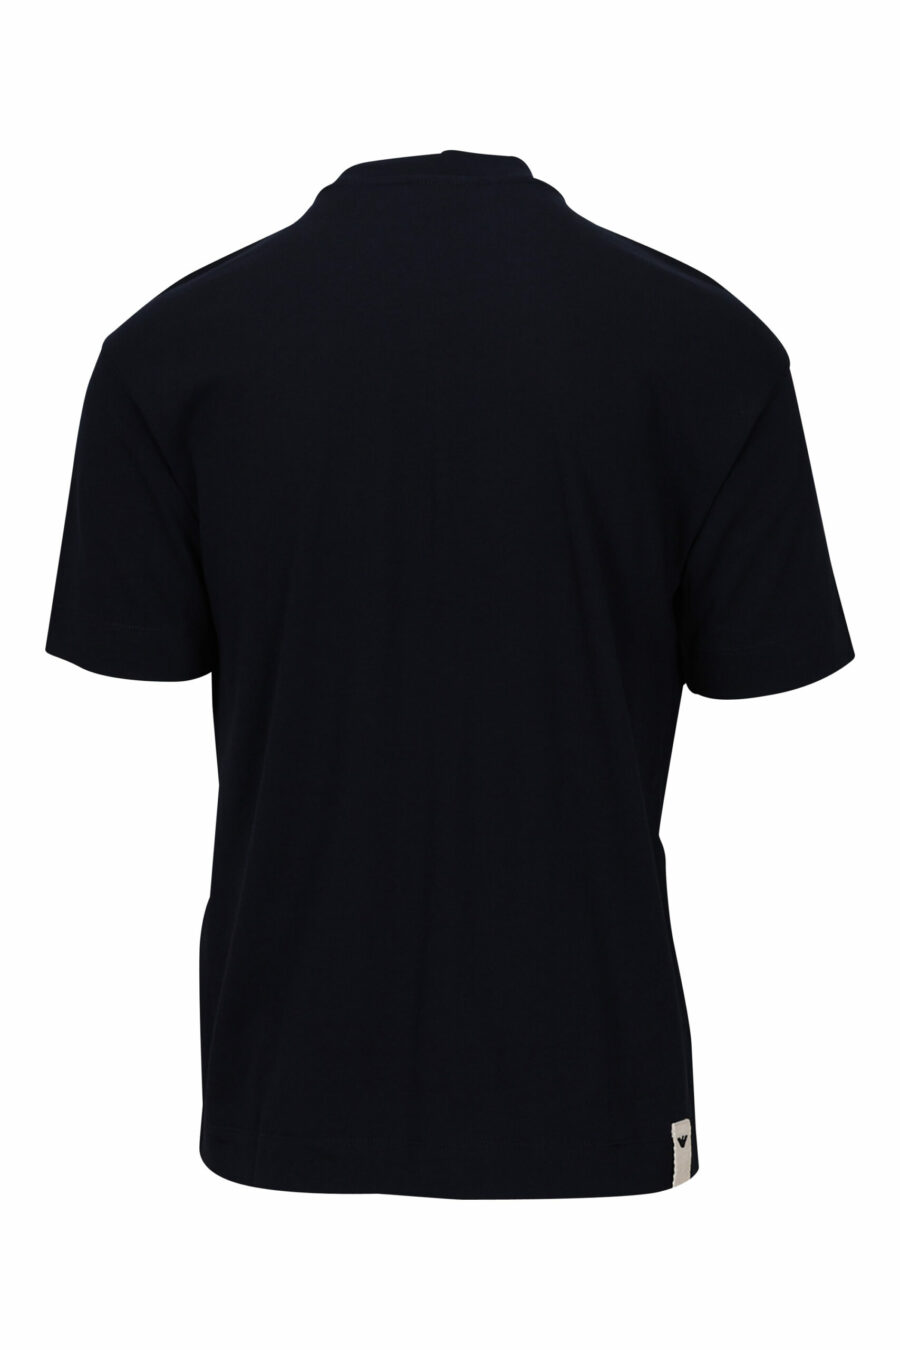 Marineblaues T-Shirt mit zentriertem Logo - 8057767459796 1 skaliert